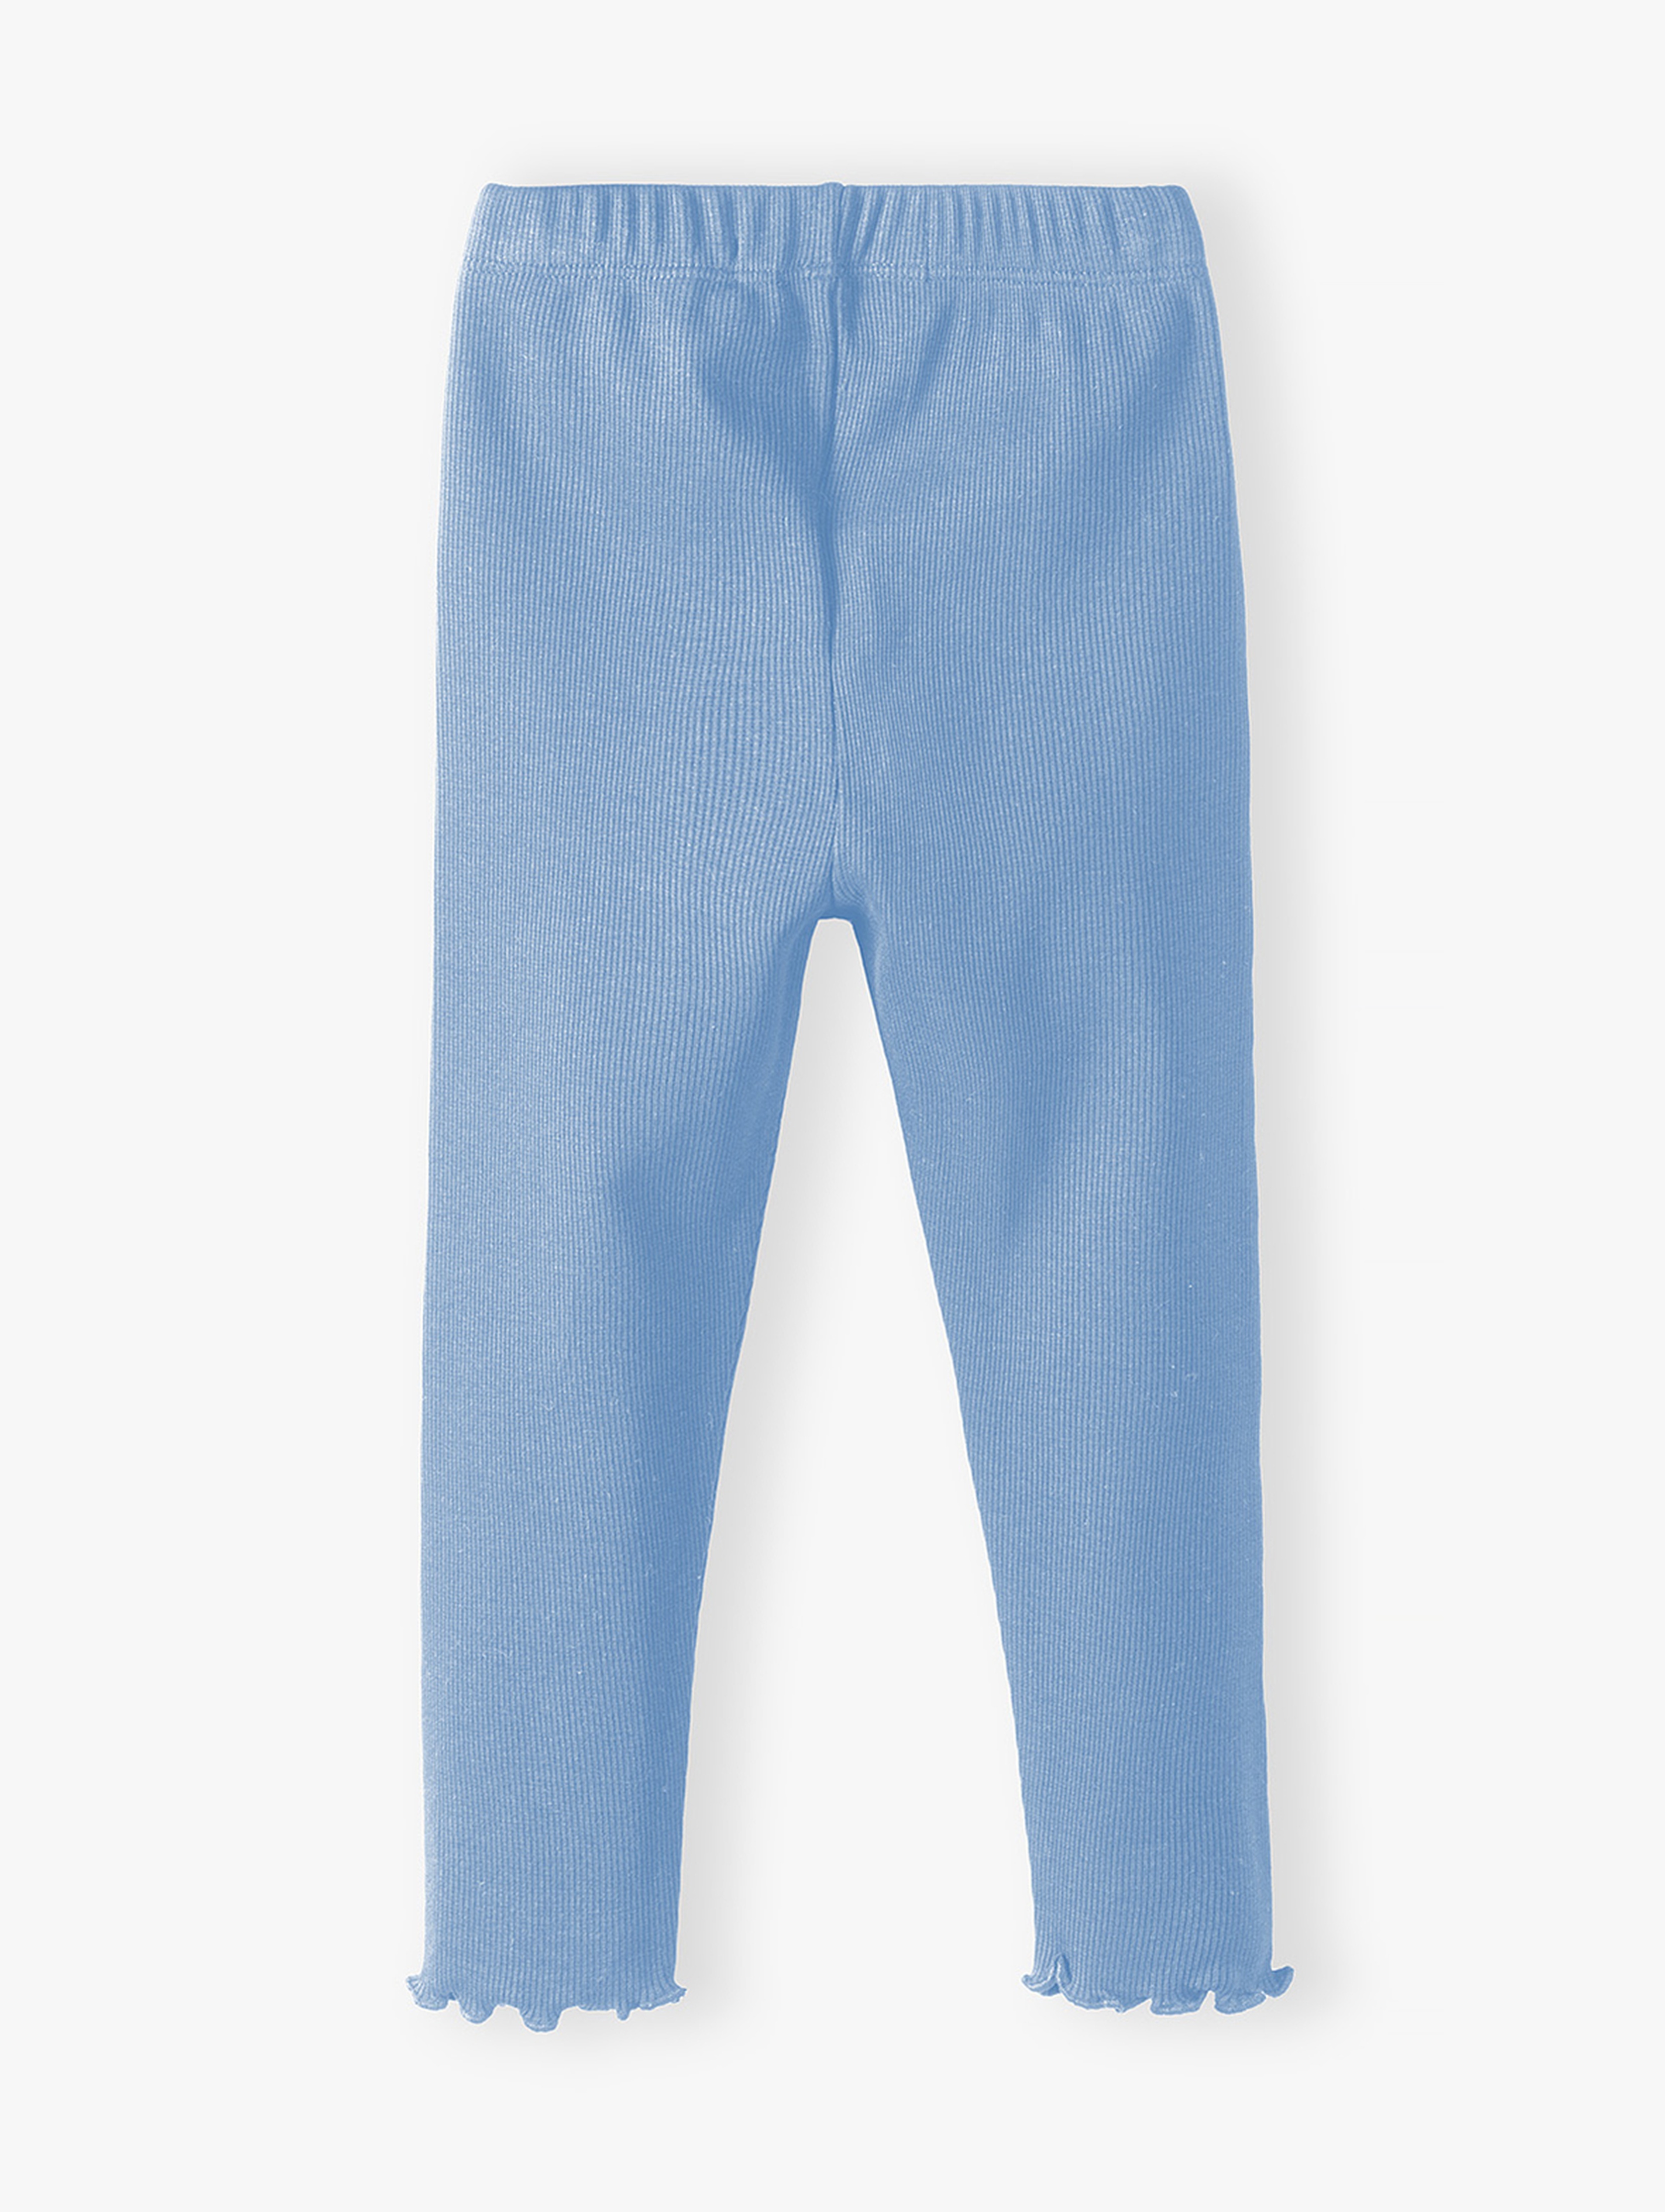 Niebieskie legginsy dla dziewczynki prążkowane